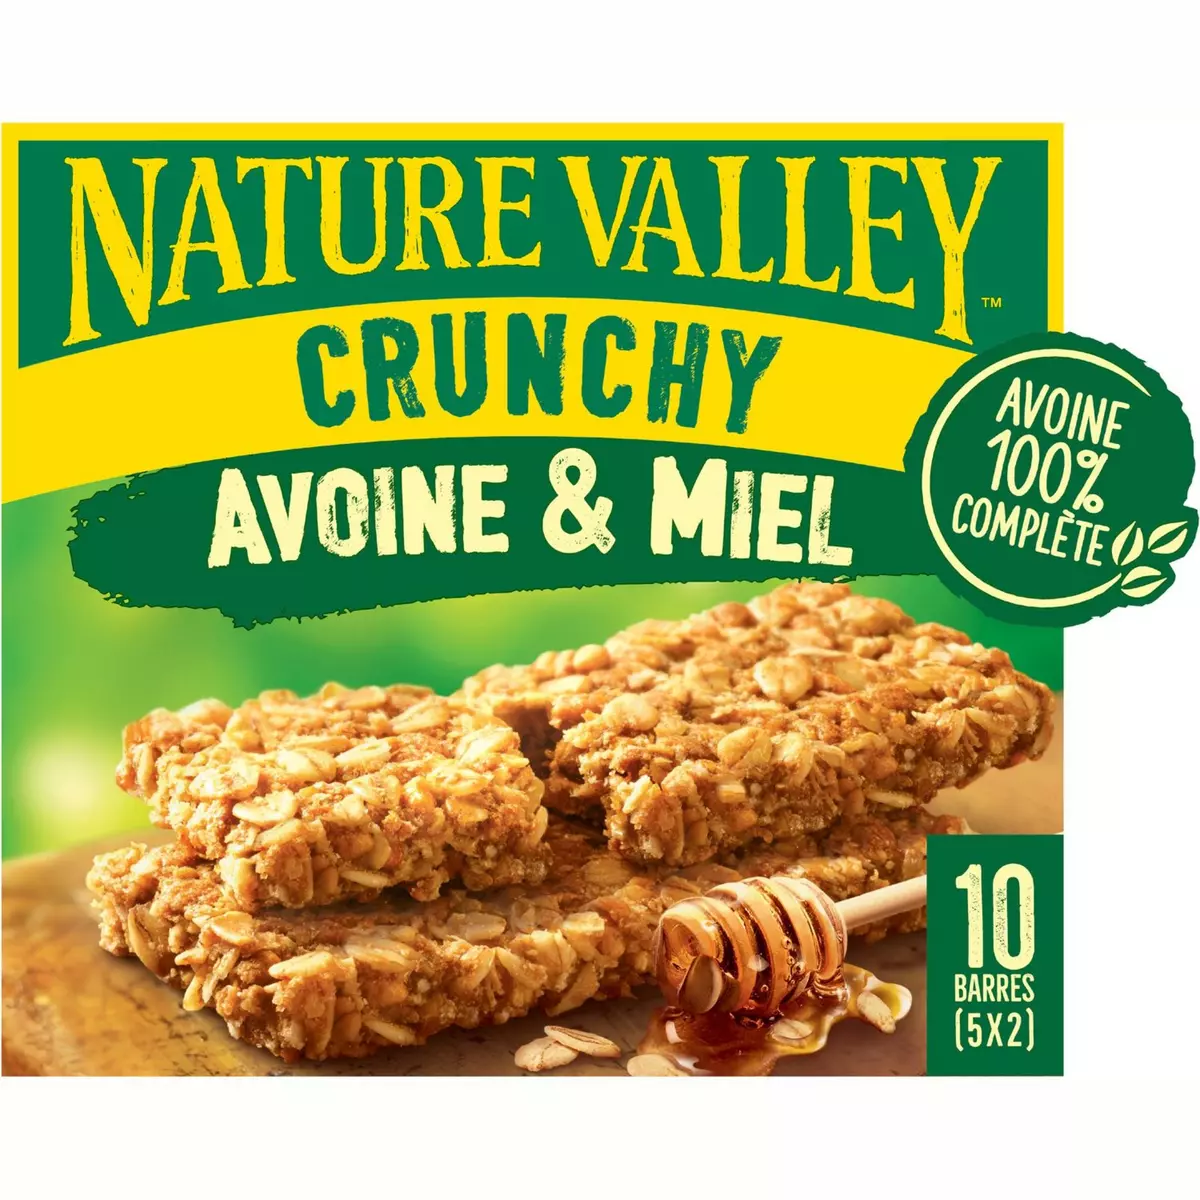 NATURE VALLEY Crunchy barres de céréales avoine et miel 5x2 barres 210g